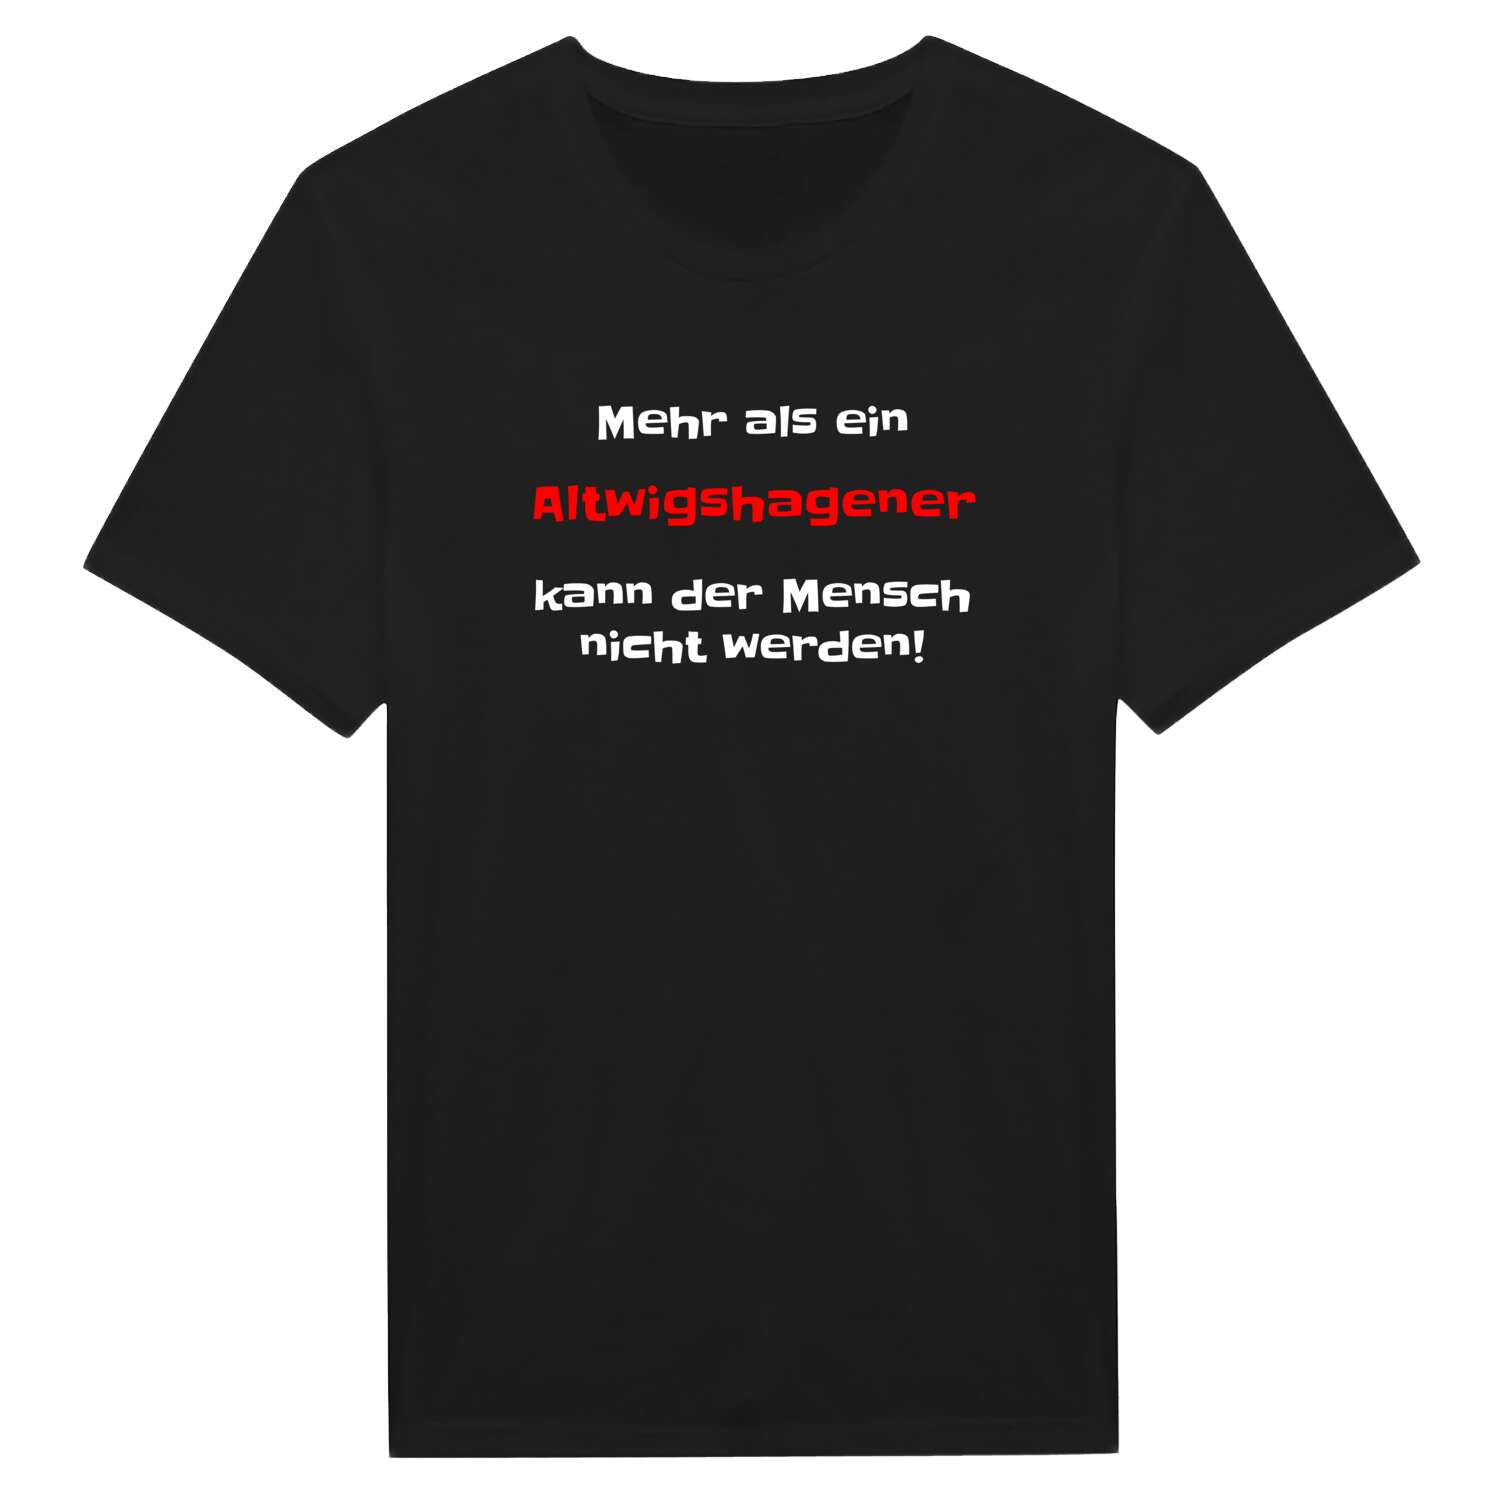 Altwigshagen T-Shirt »Mehr als ein«